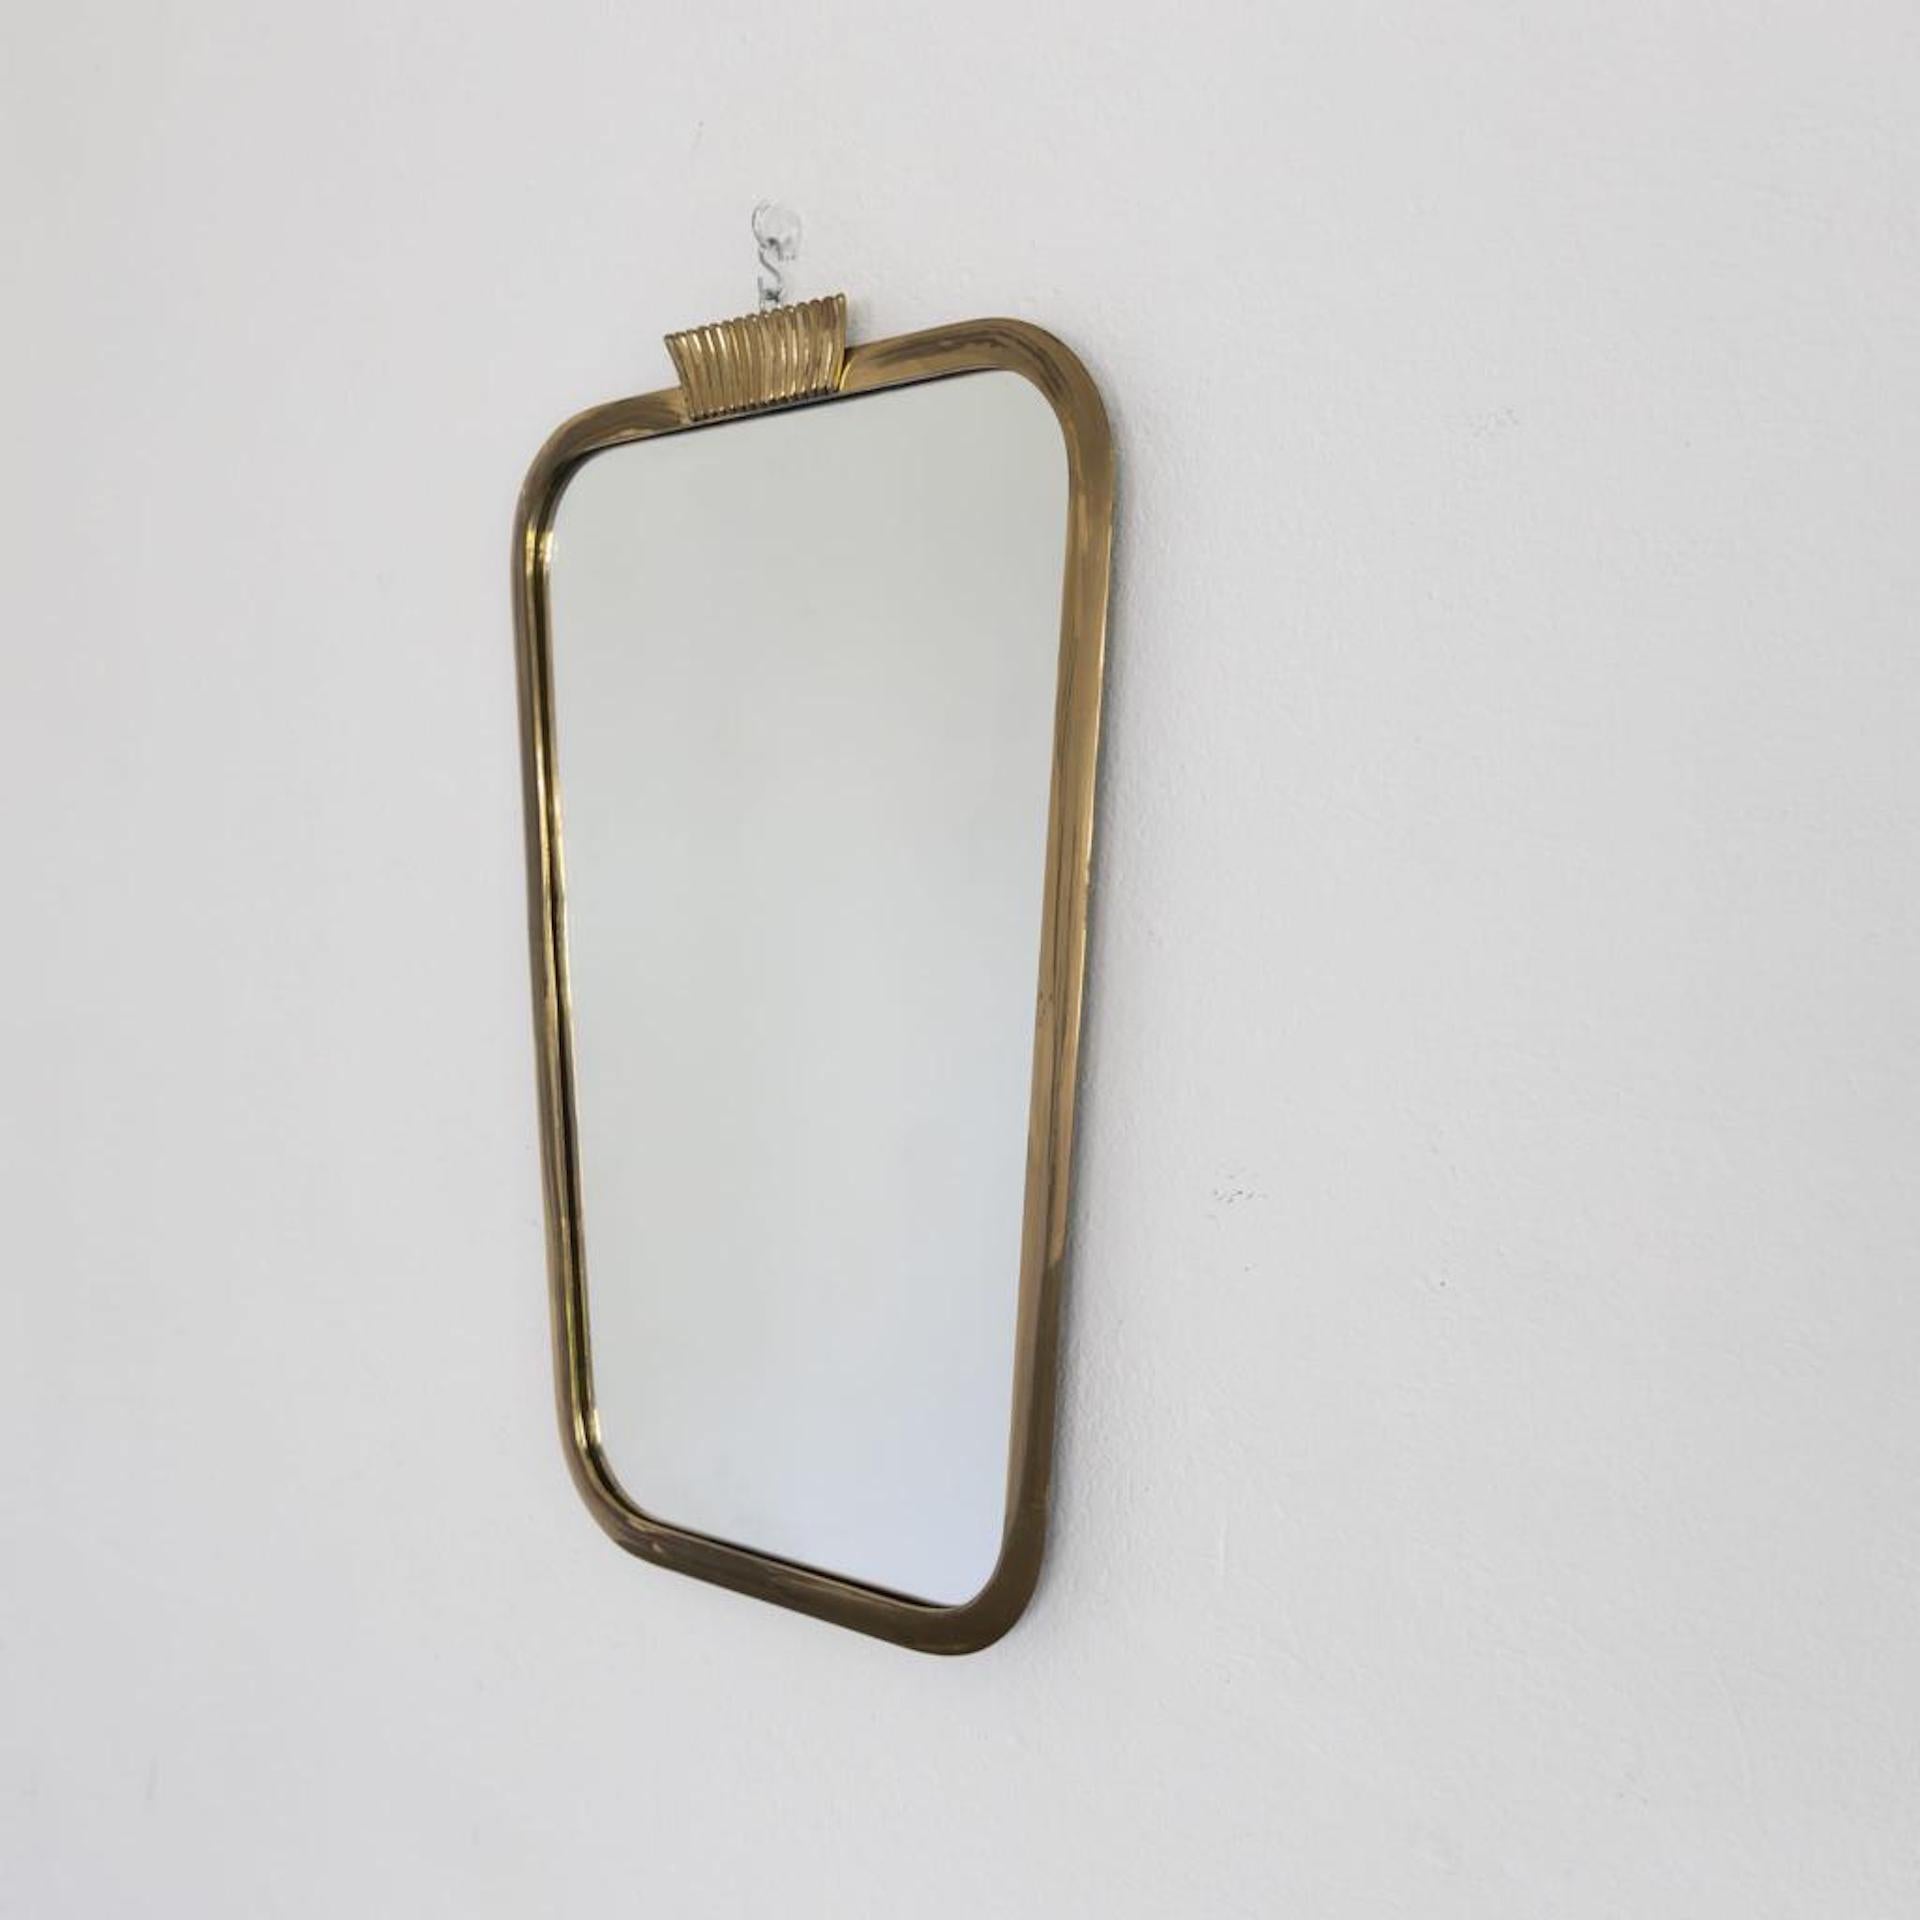 Italian Mid-Century Modern Brass Mirror by Olsvaldo Borsani, 1950s